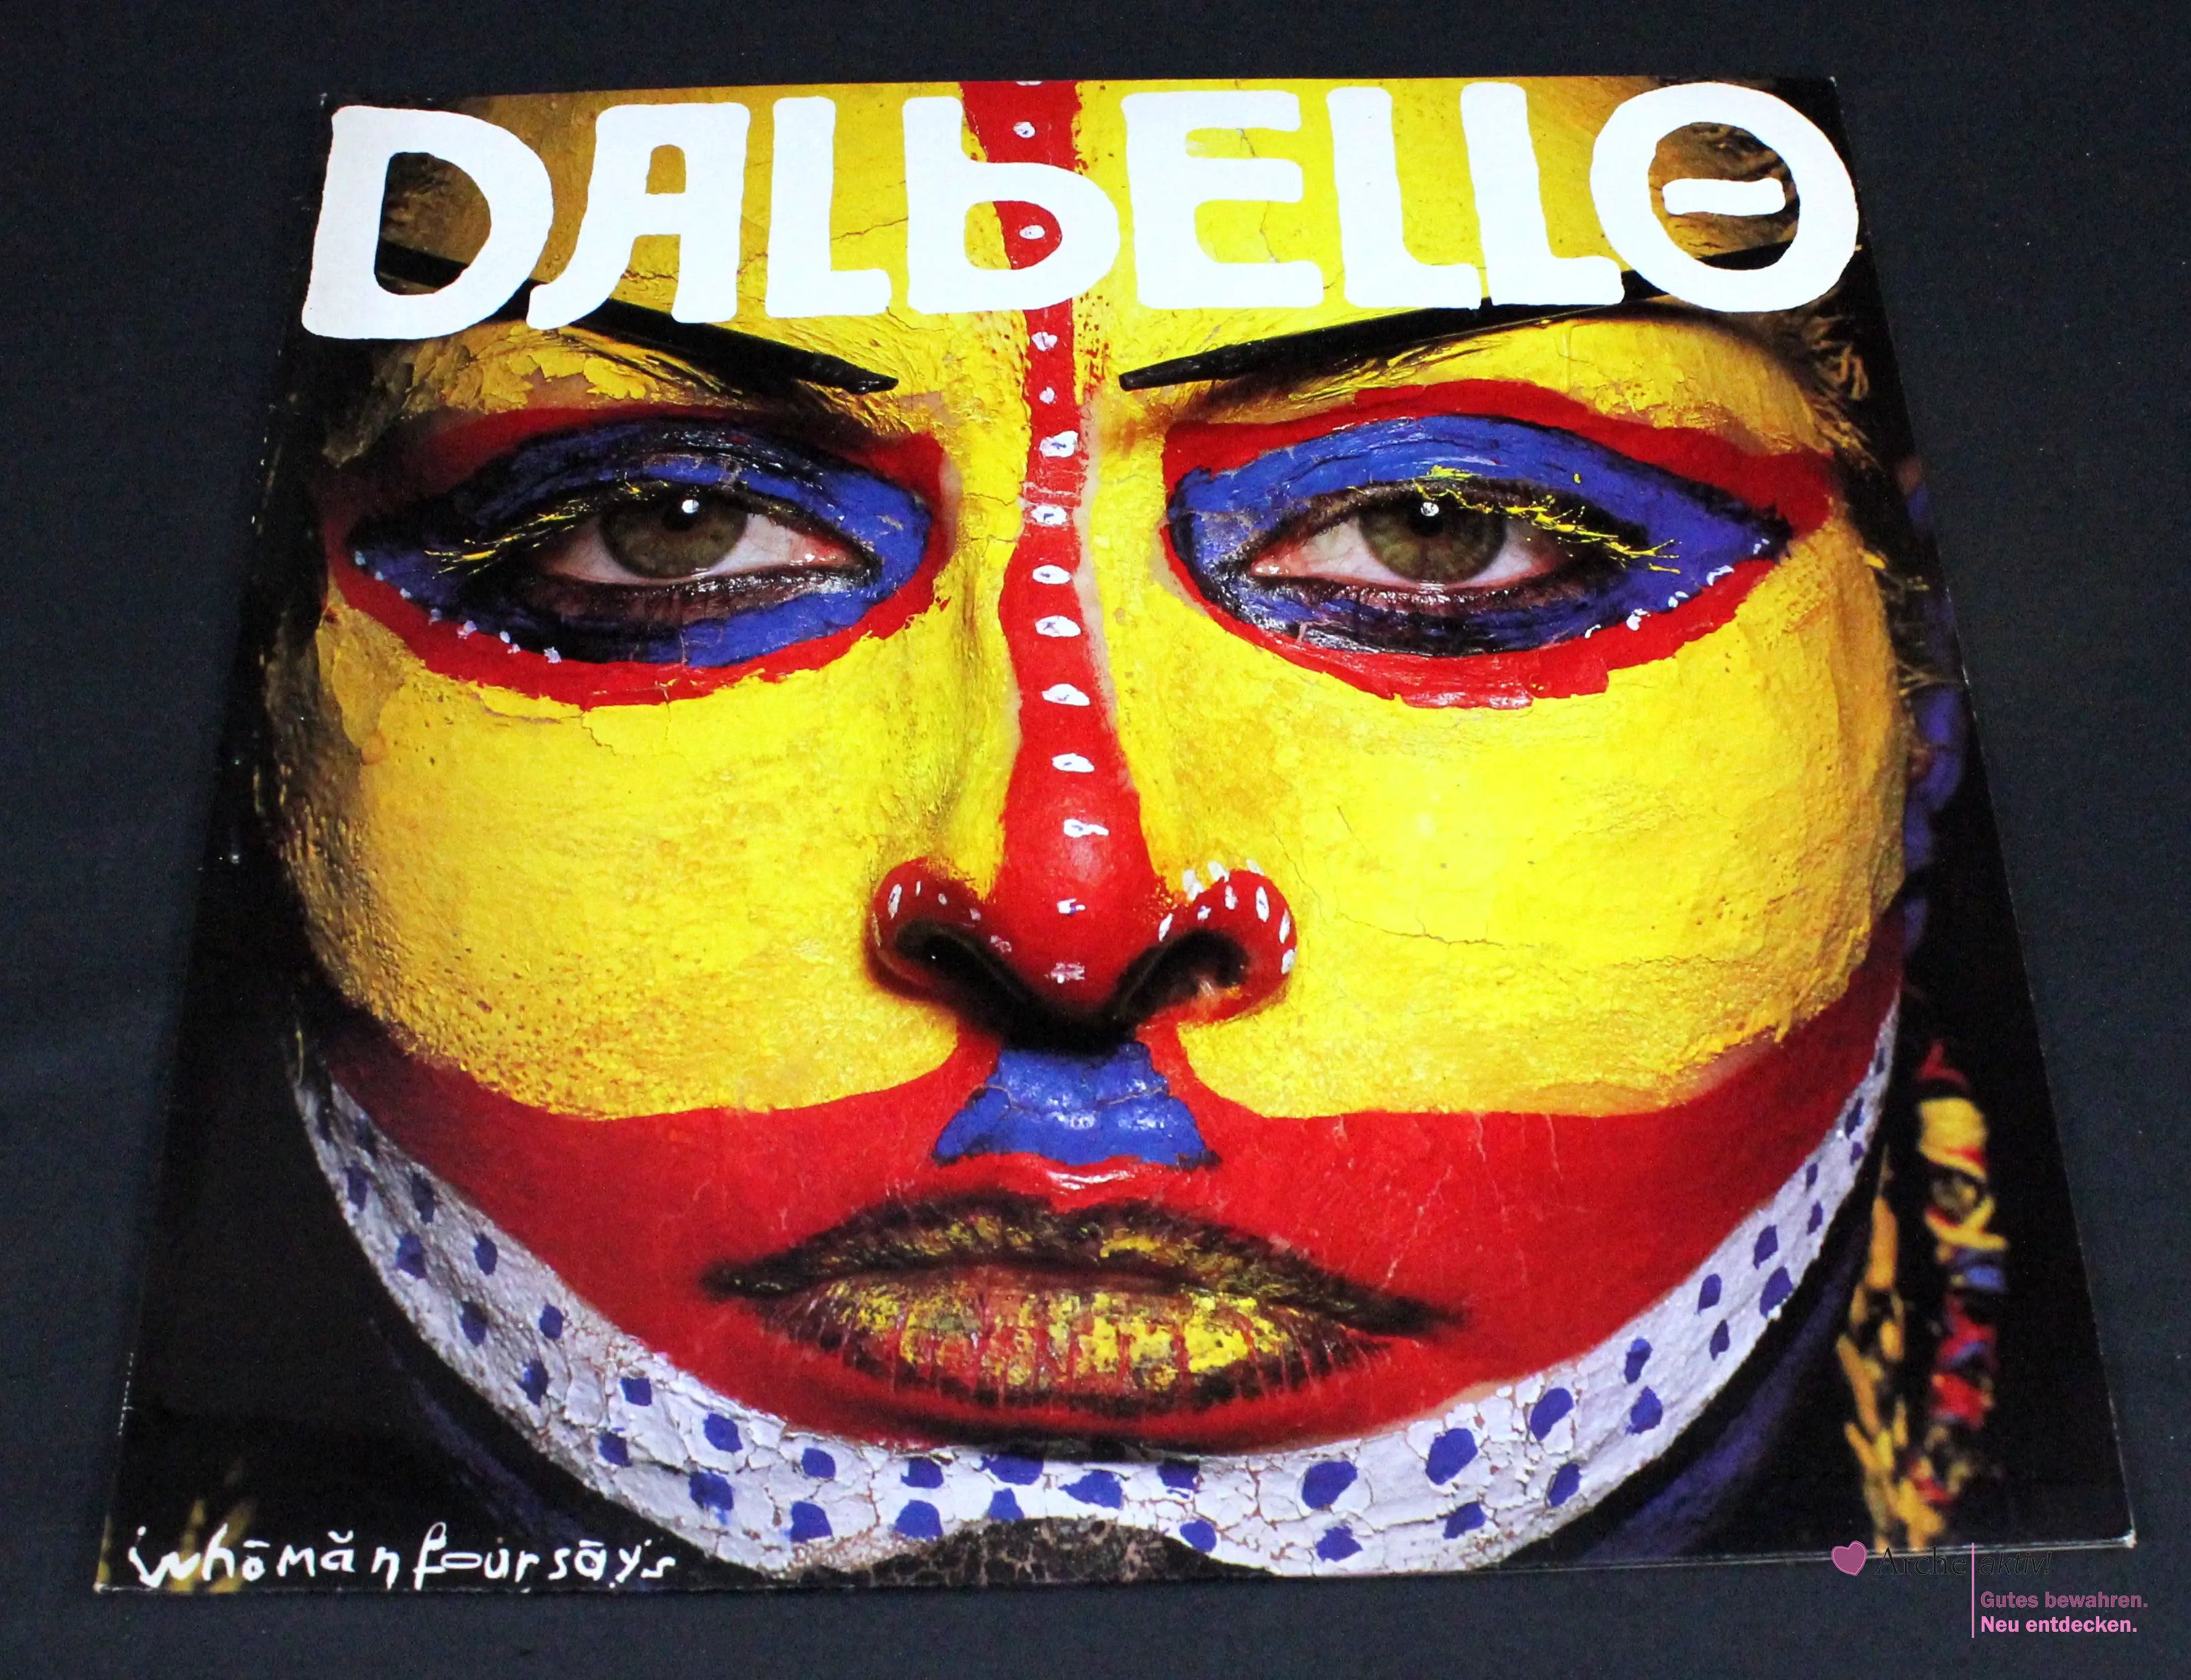 Dalbello - Whomanfoursays (Vinyl) LP, gebraucht